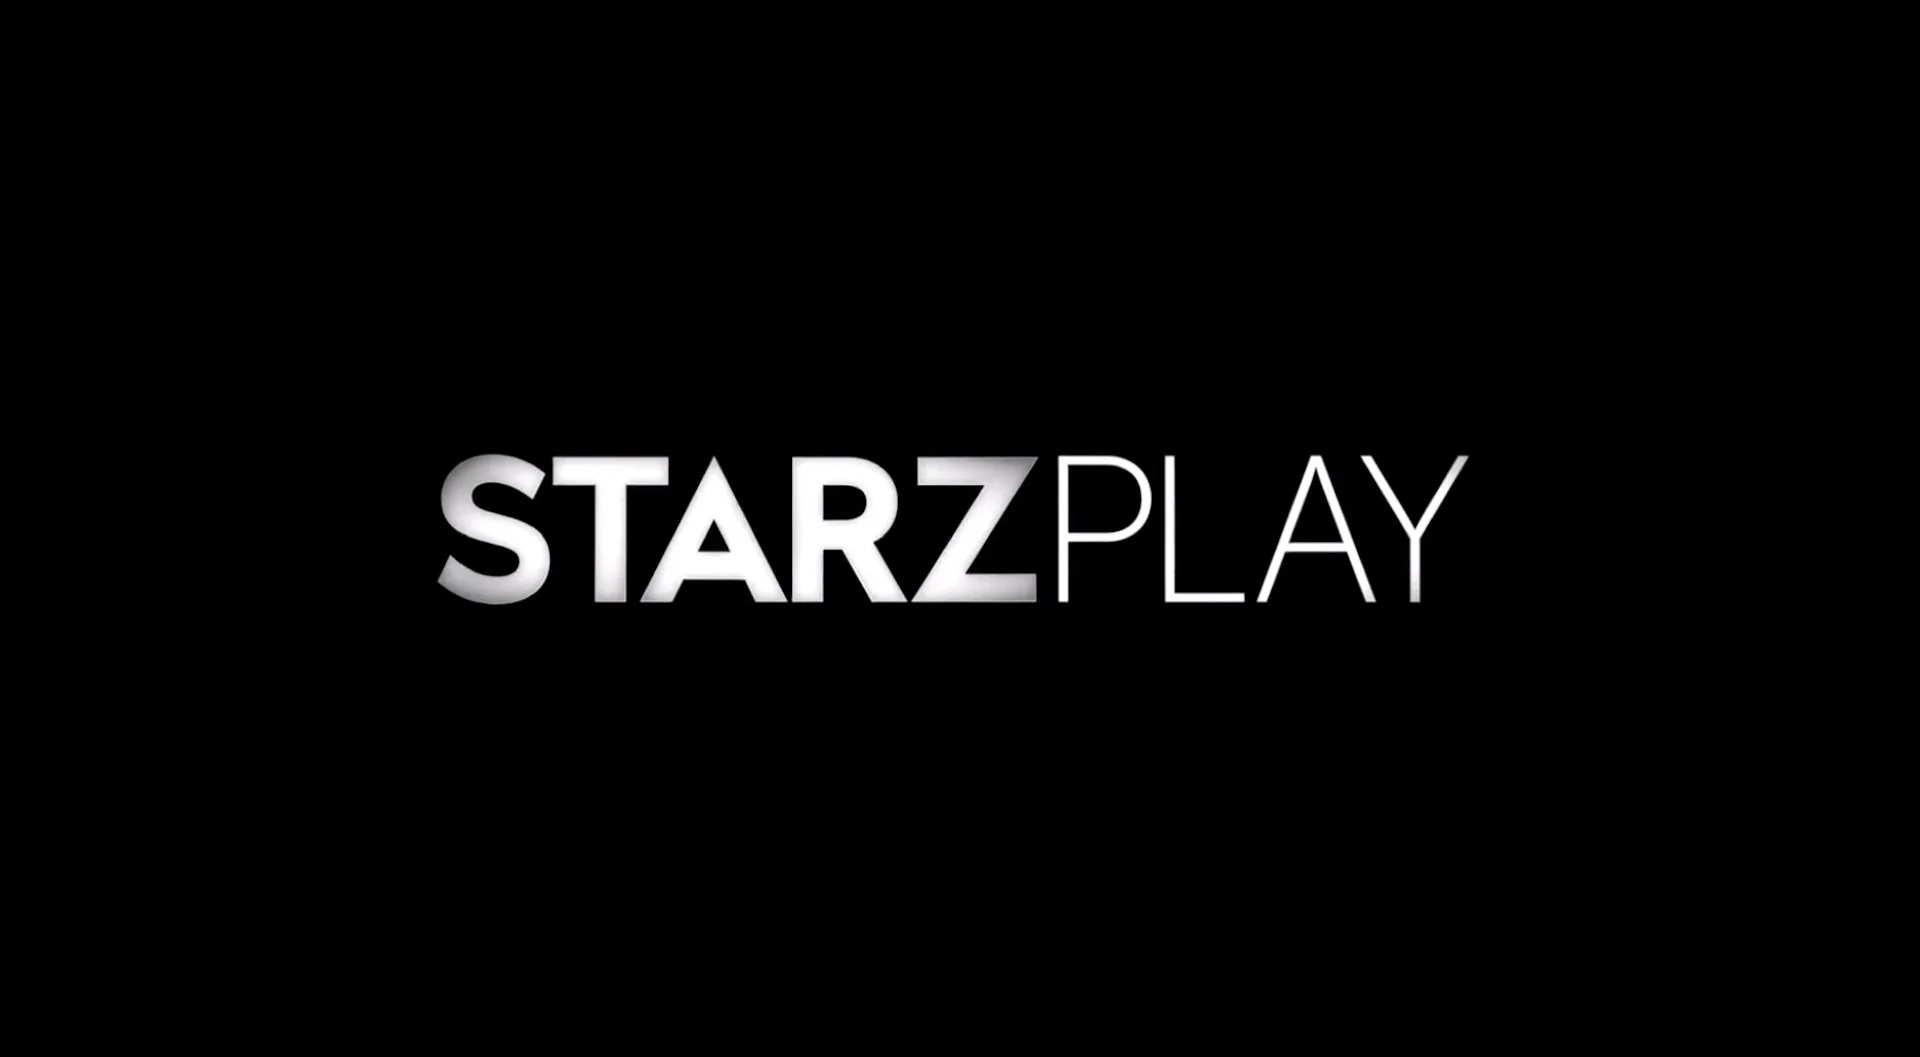 Starzplay : Le trésor caché du streaming que vous ignorez peut-être !